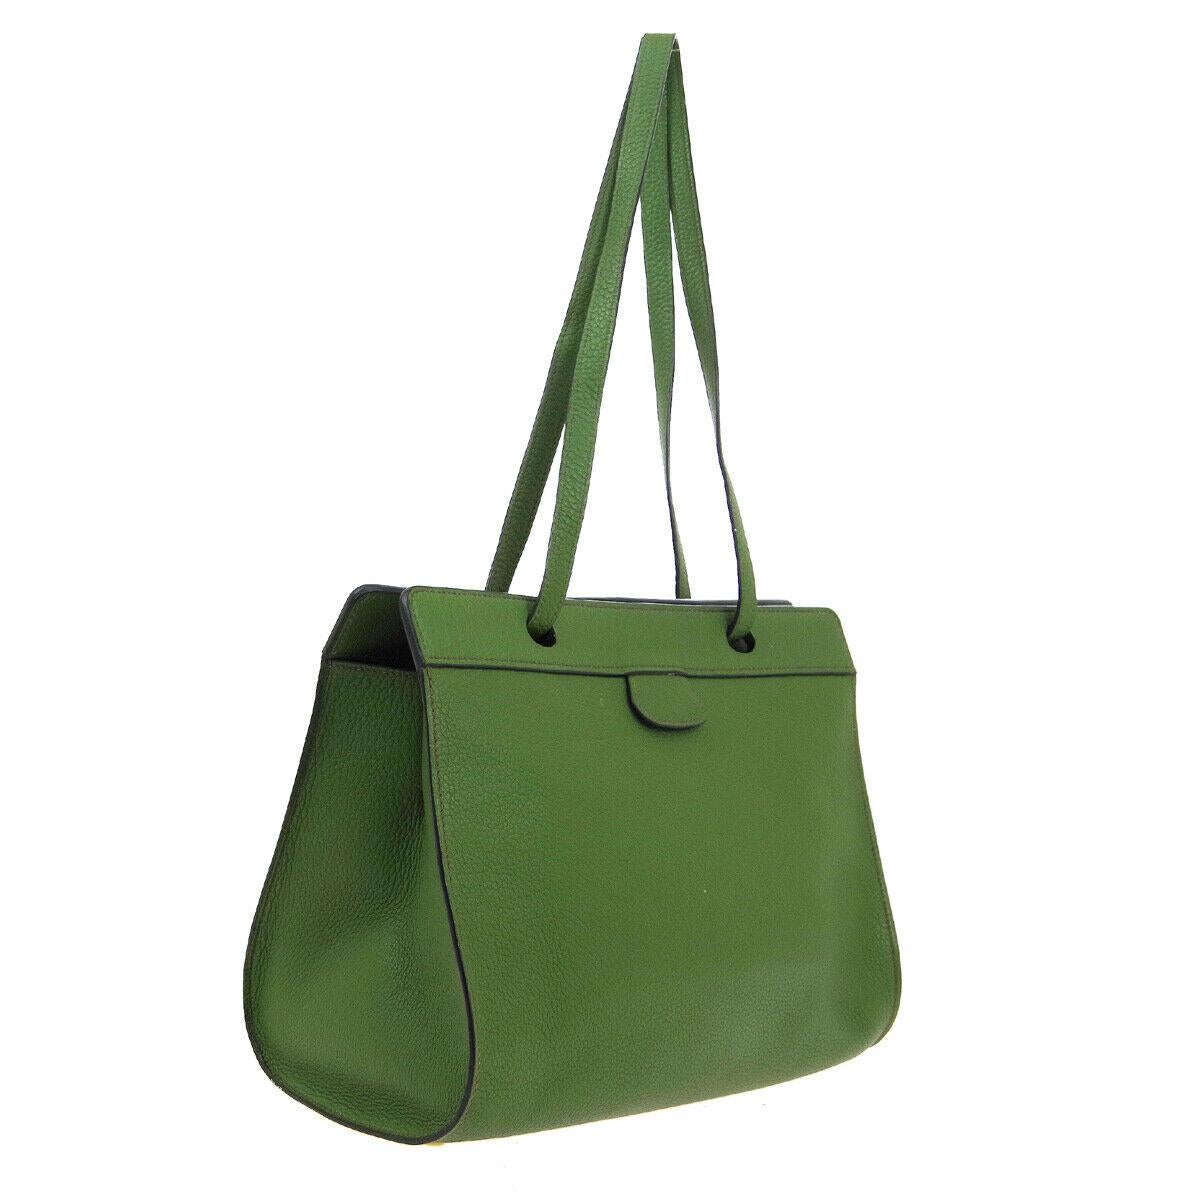 Black Hermes Green Leather Carryall Travel Large Shopper Shoulder Tote Bag